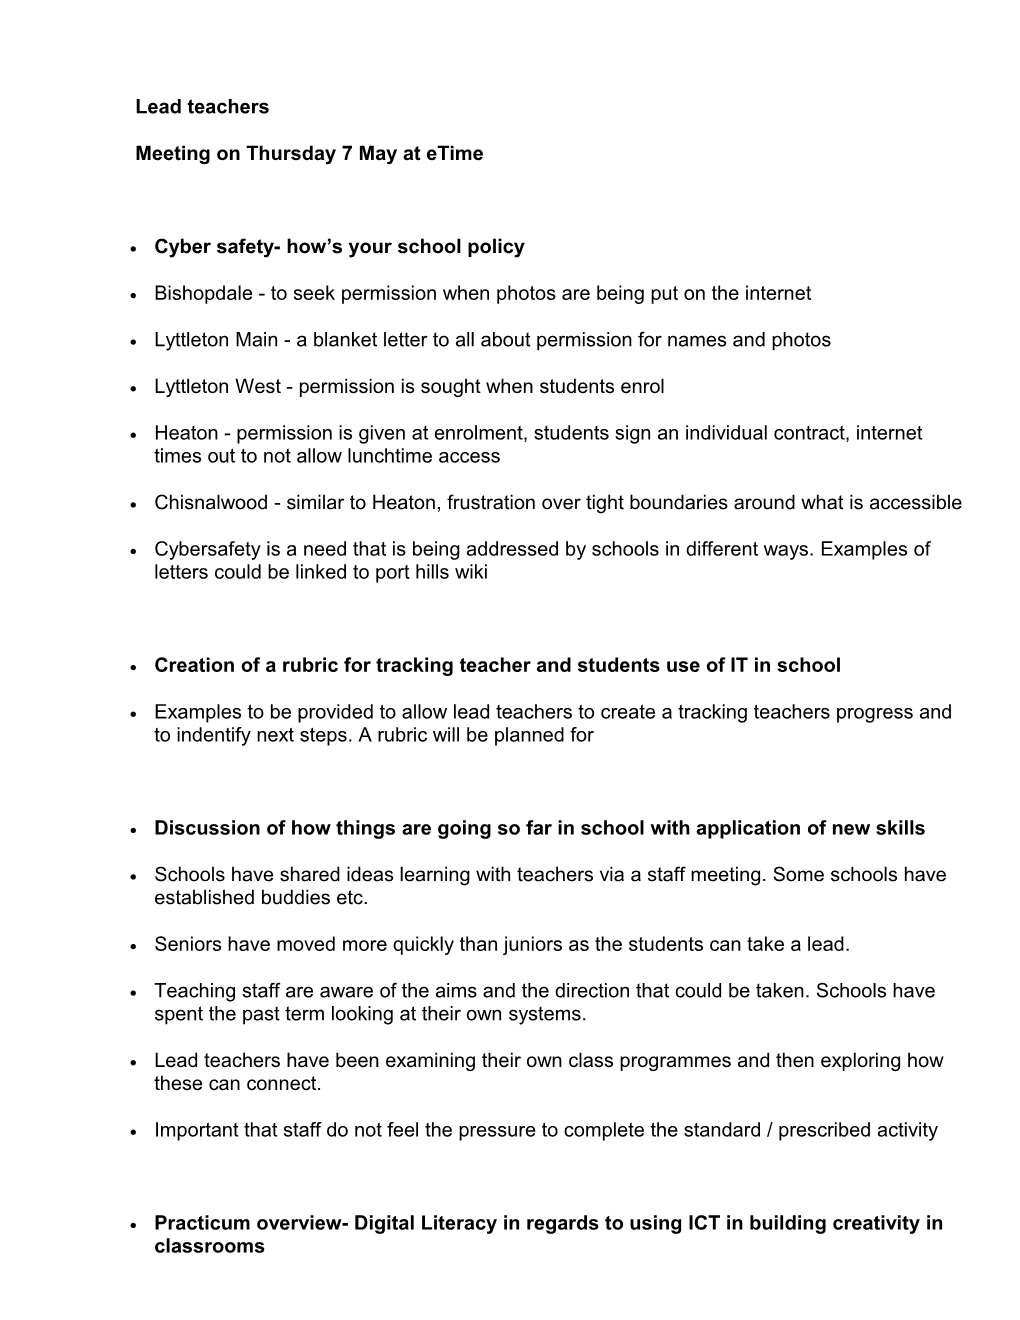 Agenda for Lead Teacher S Meeting on Thursday at Etime 1